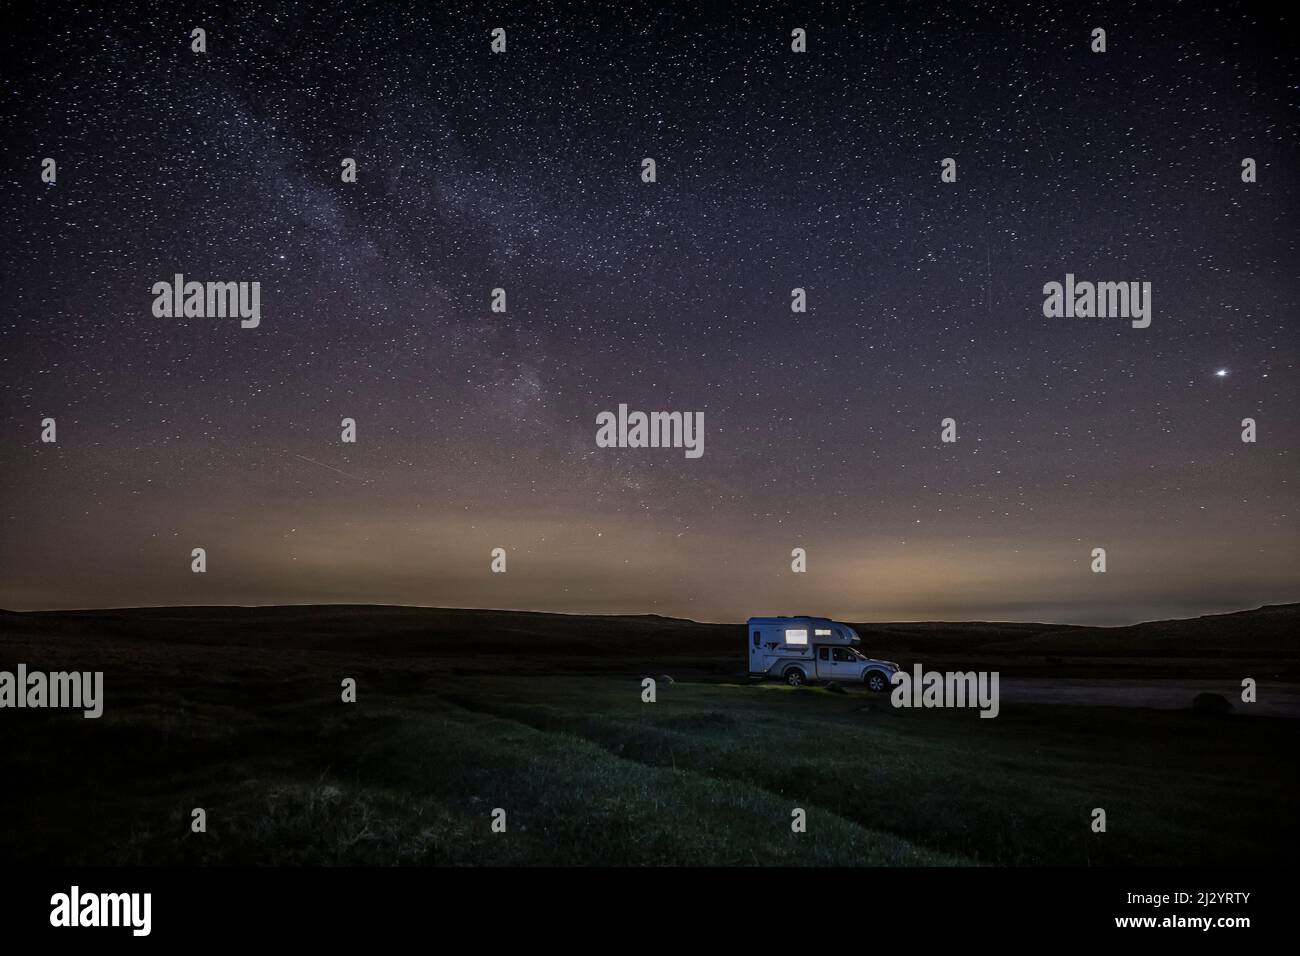 Camioneta autoiluminada, camioneta autocaravana por la noche bajo cielo estrellado, forma lechosa. Foto de stock